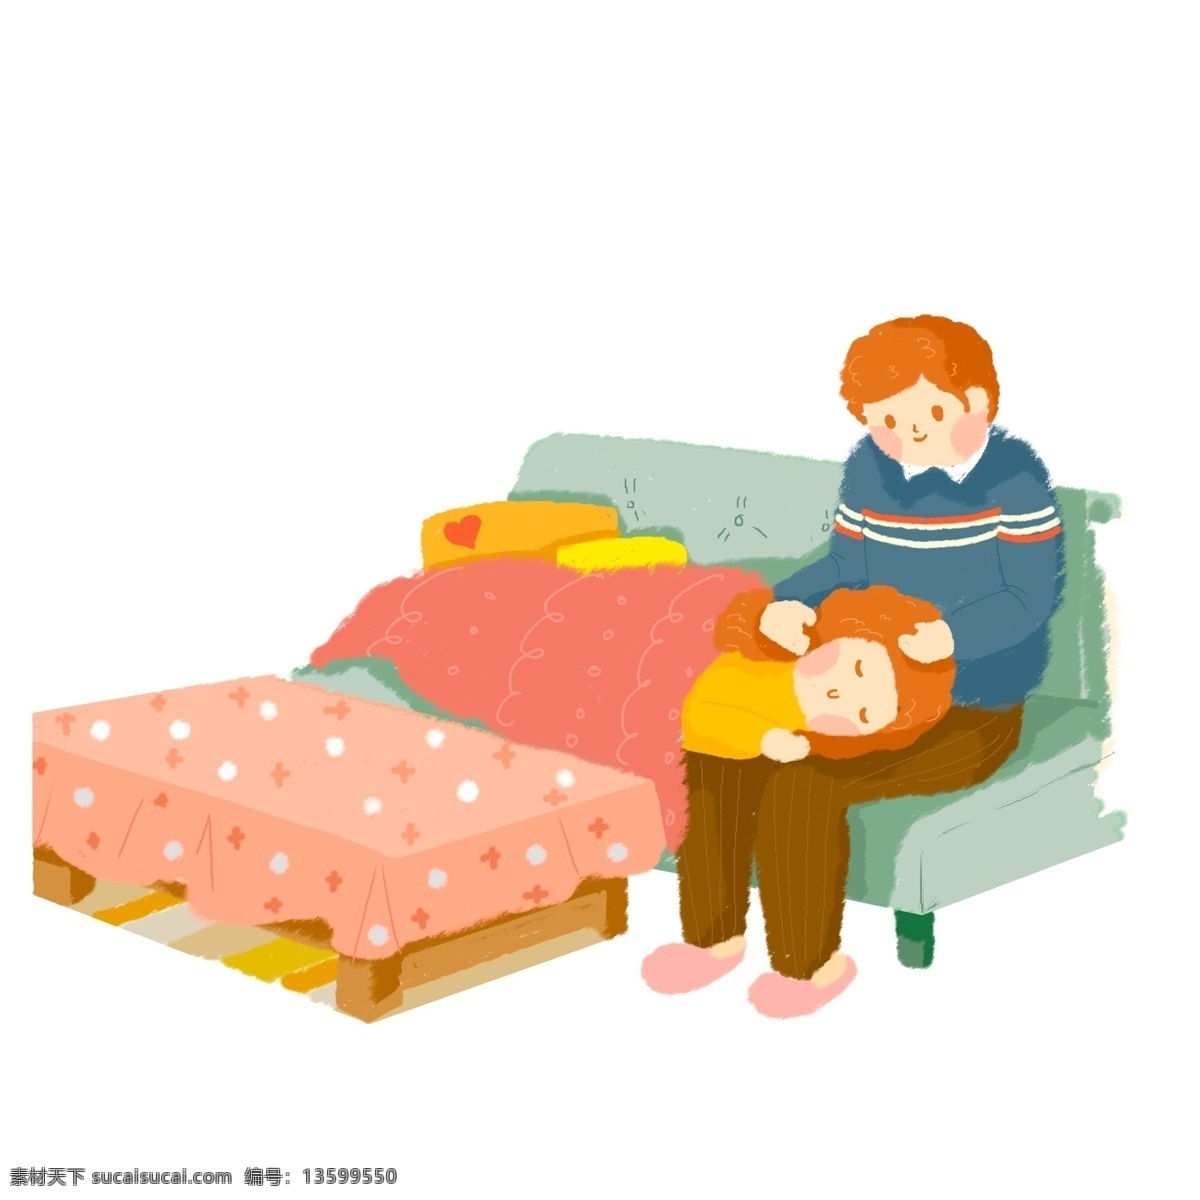 卡通 小 清新 情侣 互动 插画 温馨 睡觉 人物 沙发 居家 场景设计